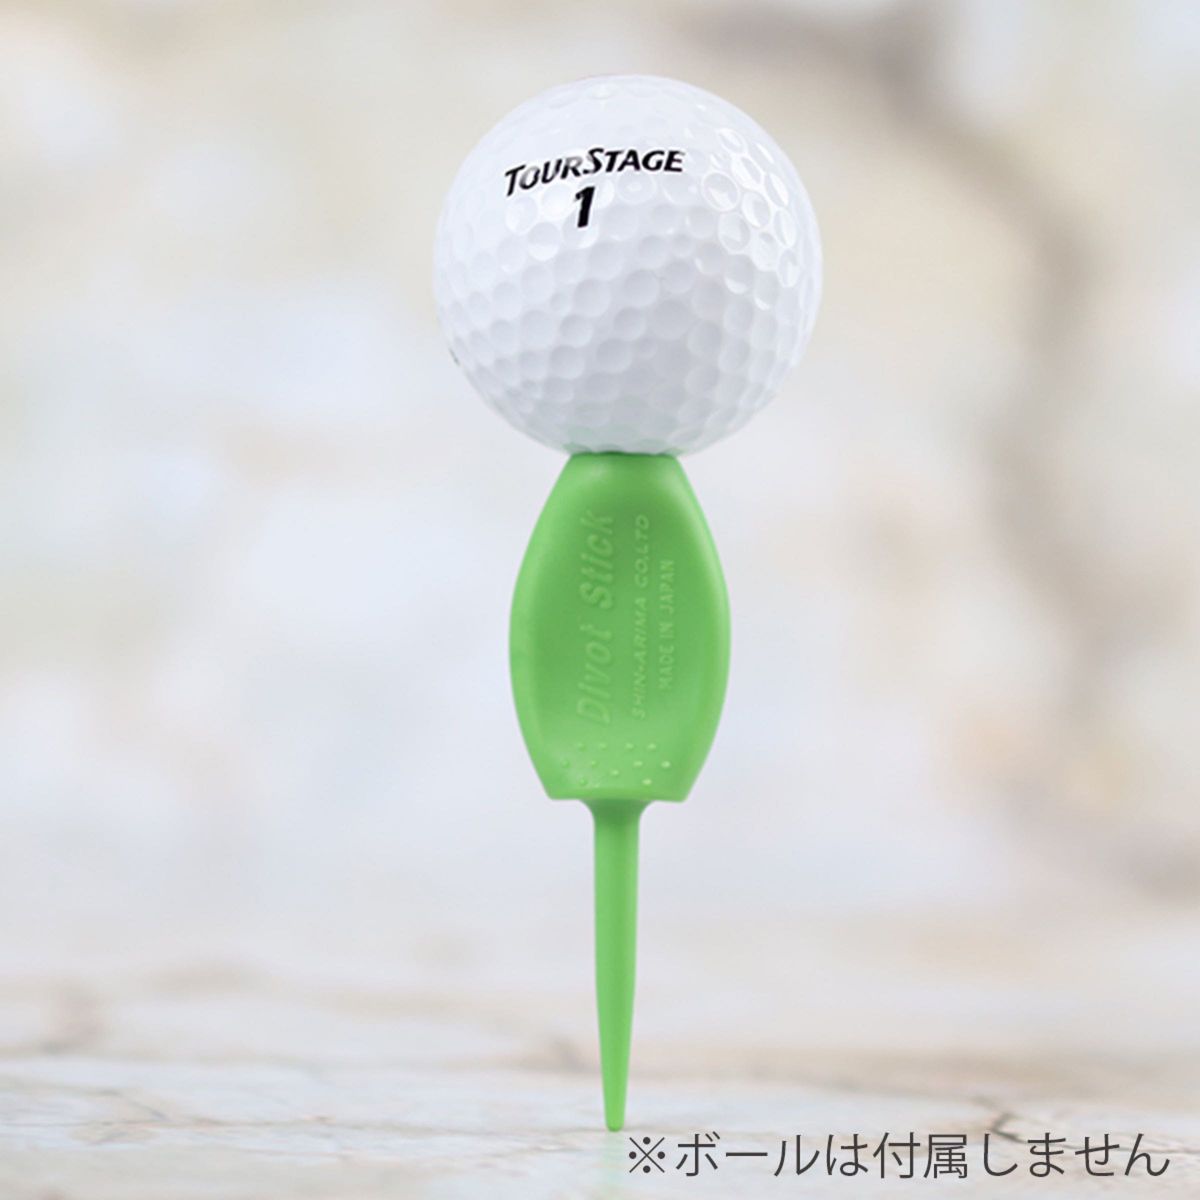 4本セット 日本製 パリティー 通常色 グリーン 緑色 ゴルフボール 跡 ゴルフティー ティーペグ グリーンフォーク b098Tg